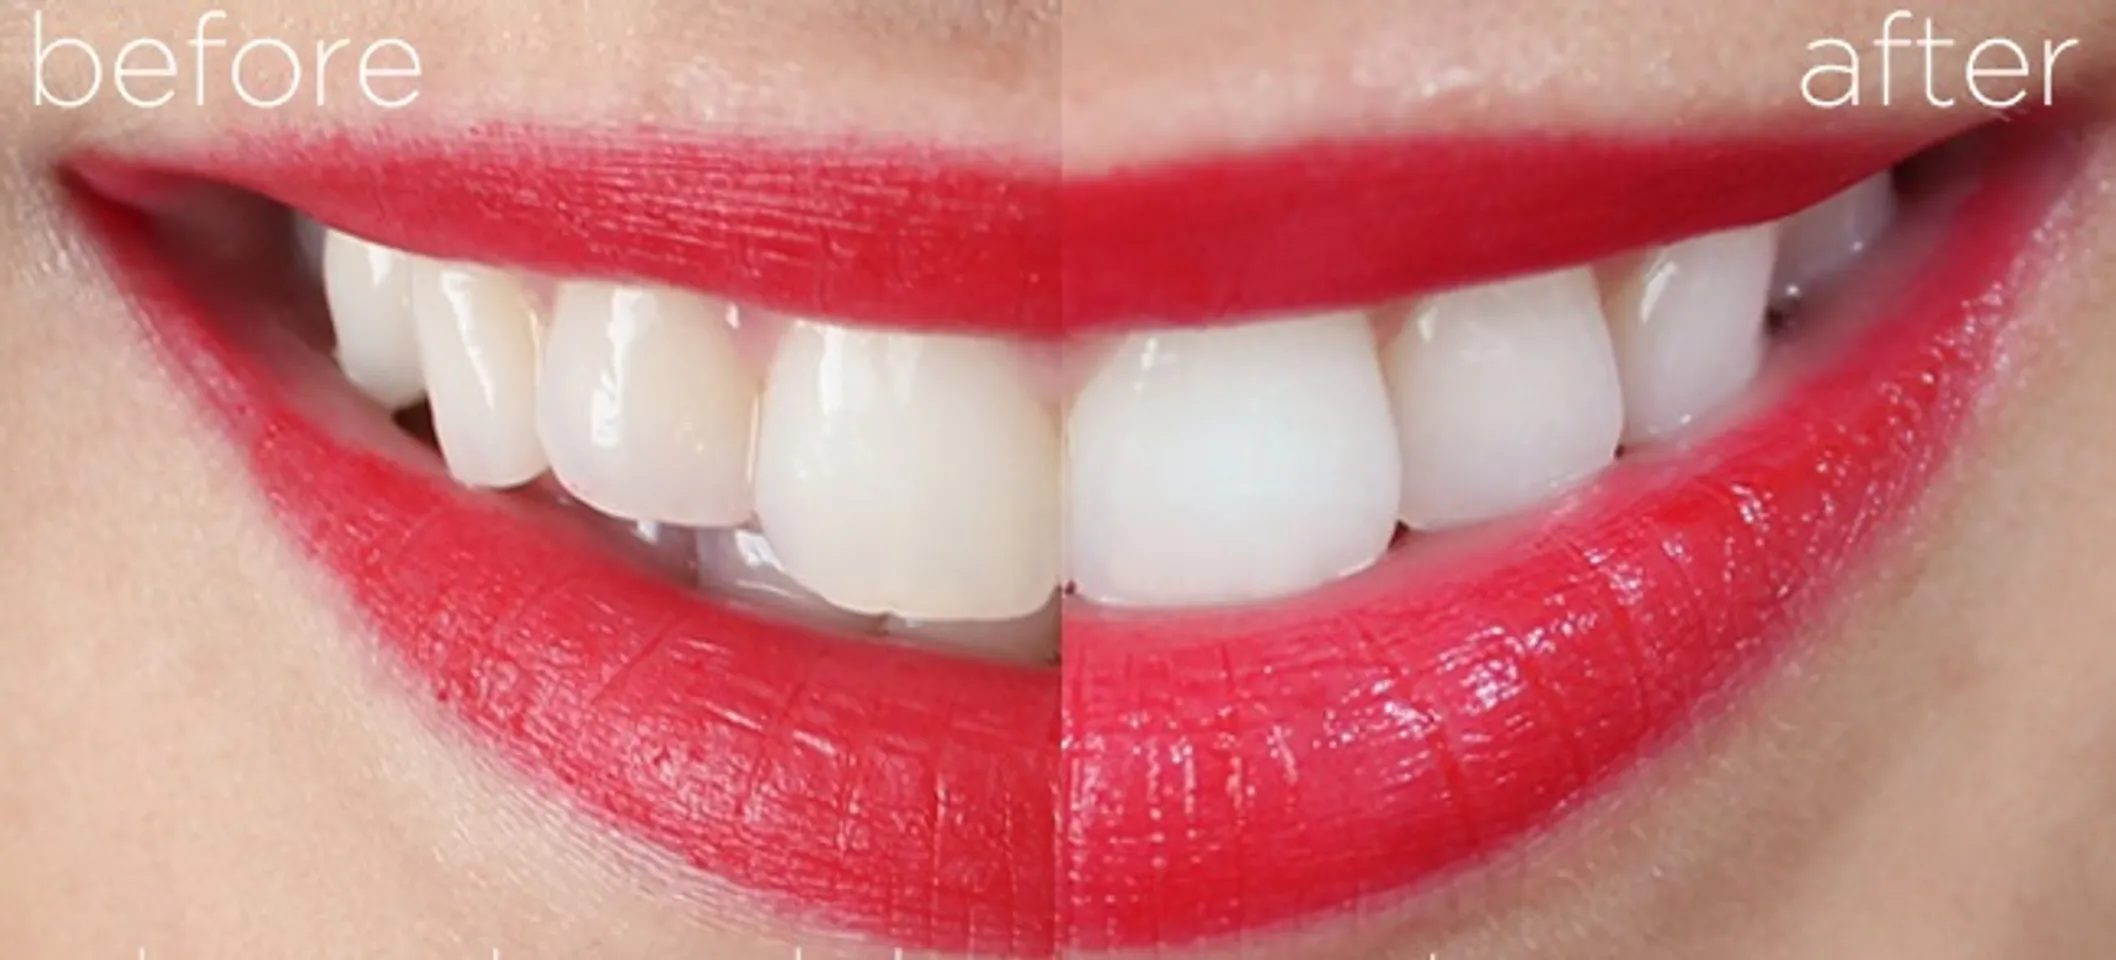 Cơ chế làm trắng răng của Crest 3D White Glamorous White là tạo lớp bọt dày bao phủ hàm răng trong quá trình đánh răng